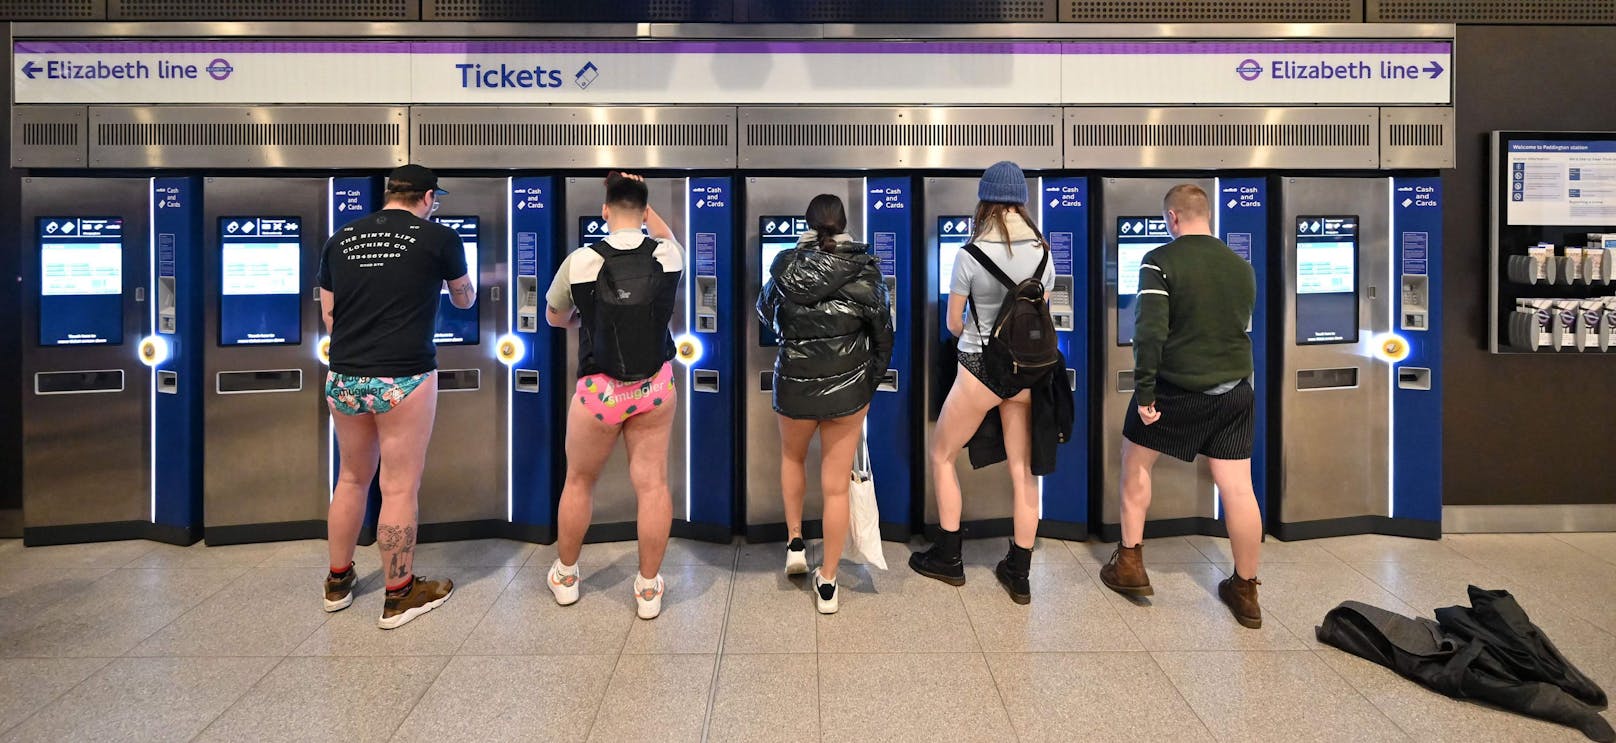 Hosen? Die blieben am "No Trousers Day" in London nach zwei Jahren Pause wieder Zuhause.